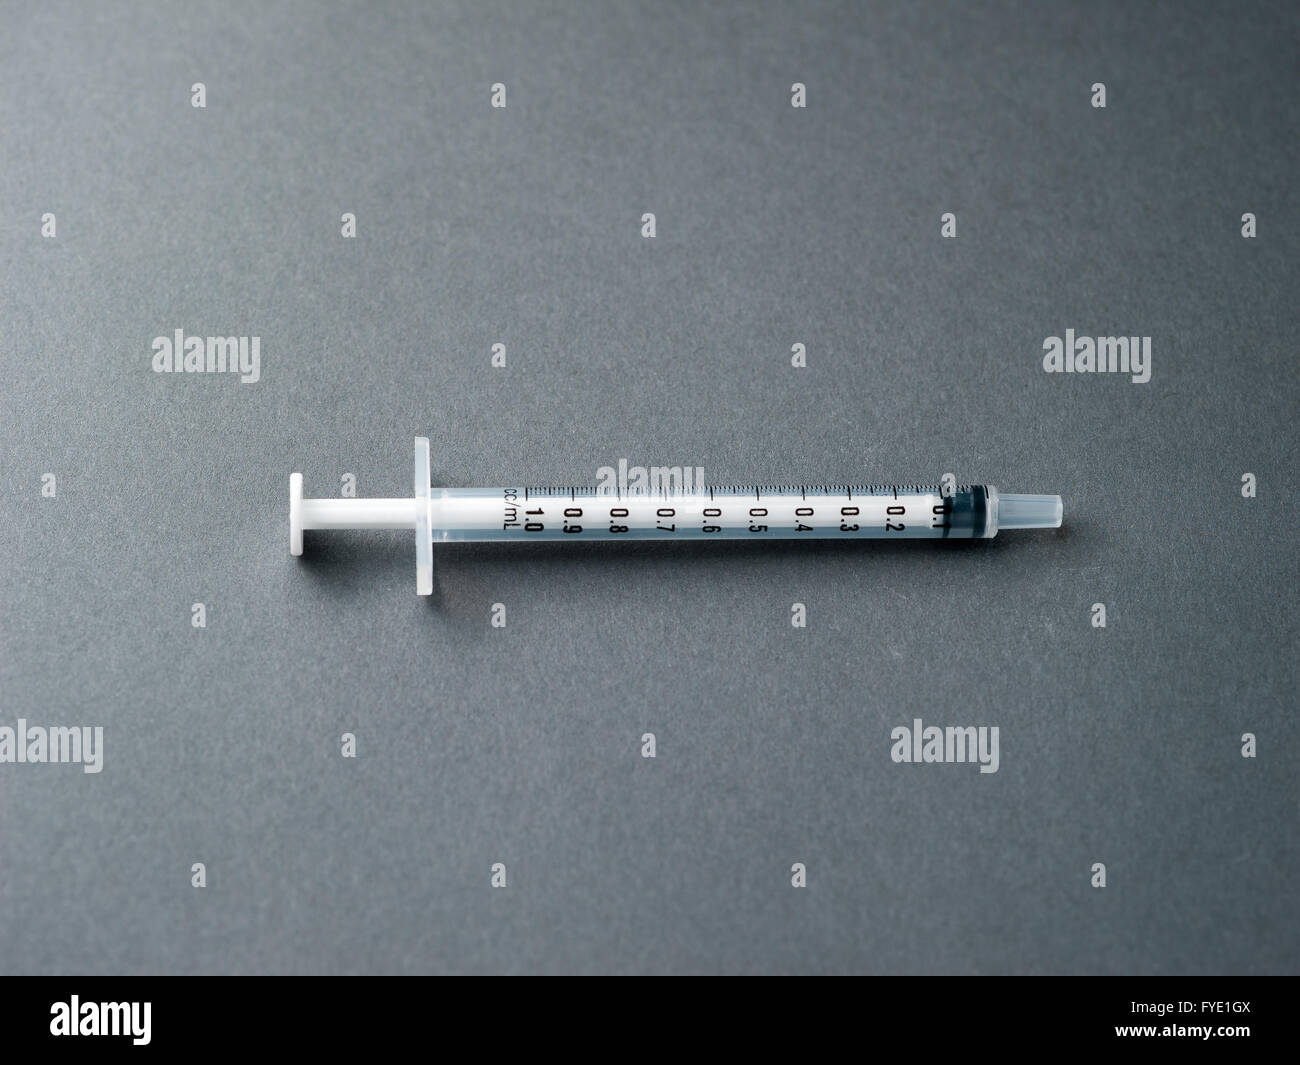 Syringe without a needle on a grey background. Stock Photo